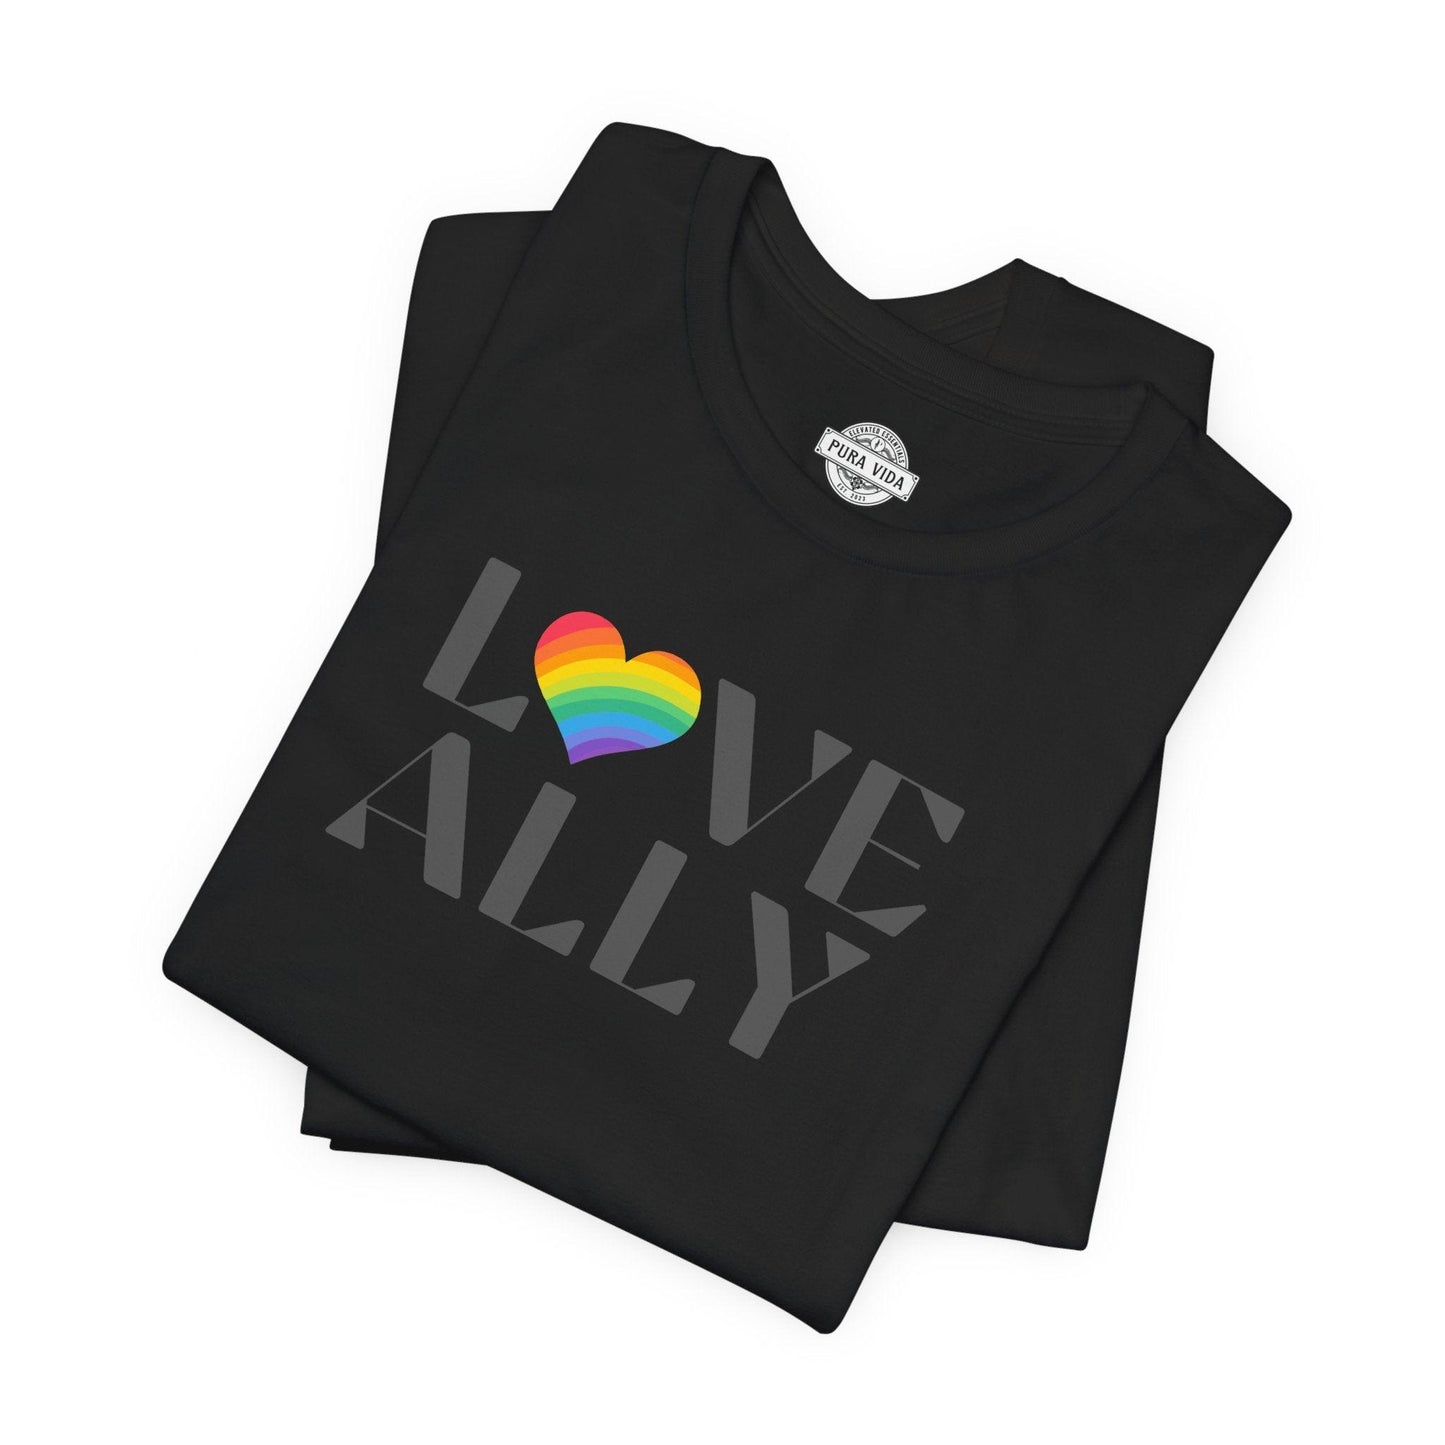 Love Ally Rainbow Heart Pride Tee - The Pura Vida Co.